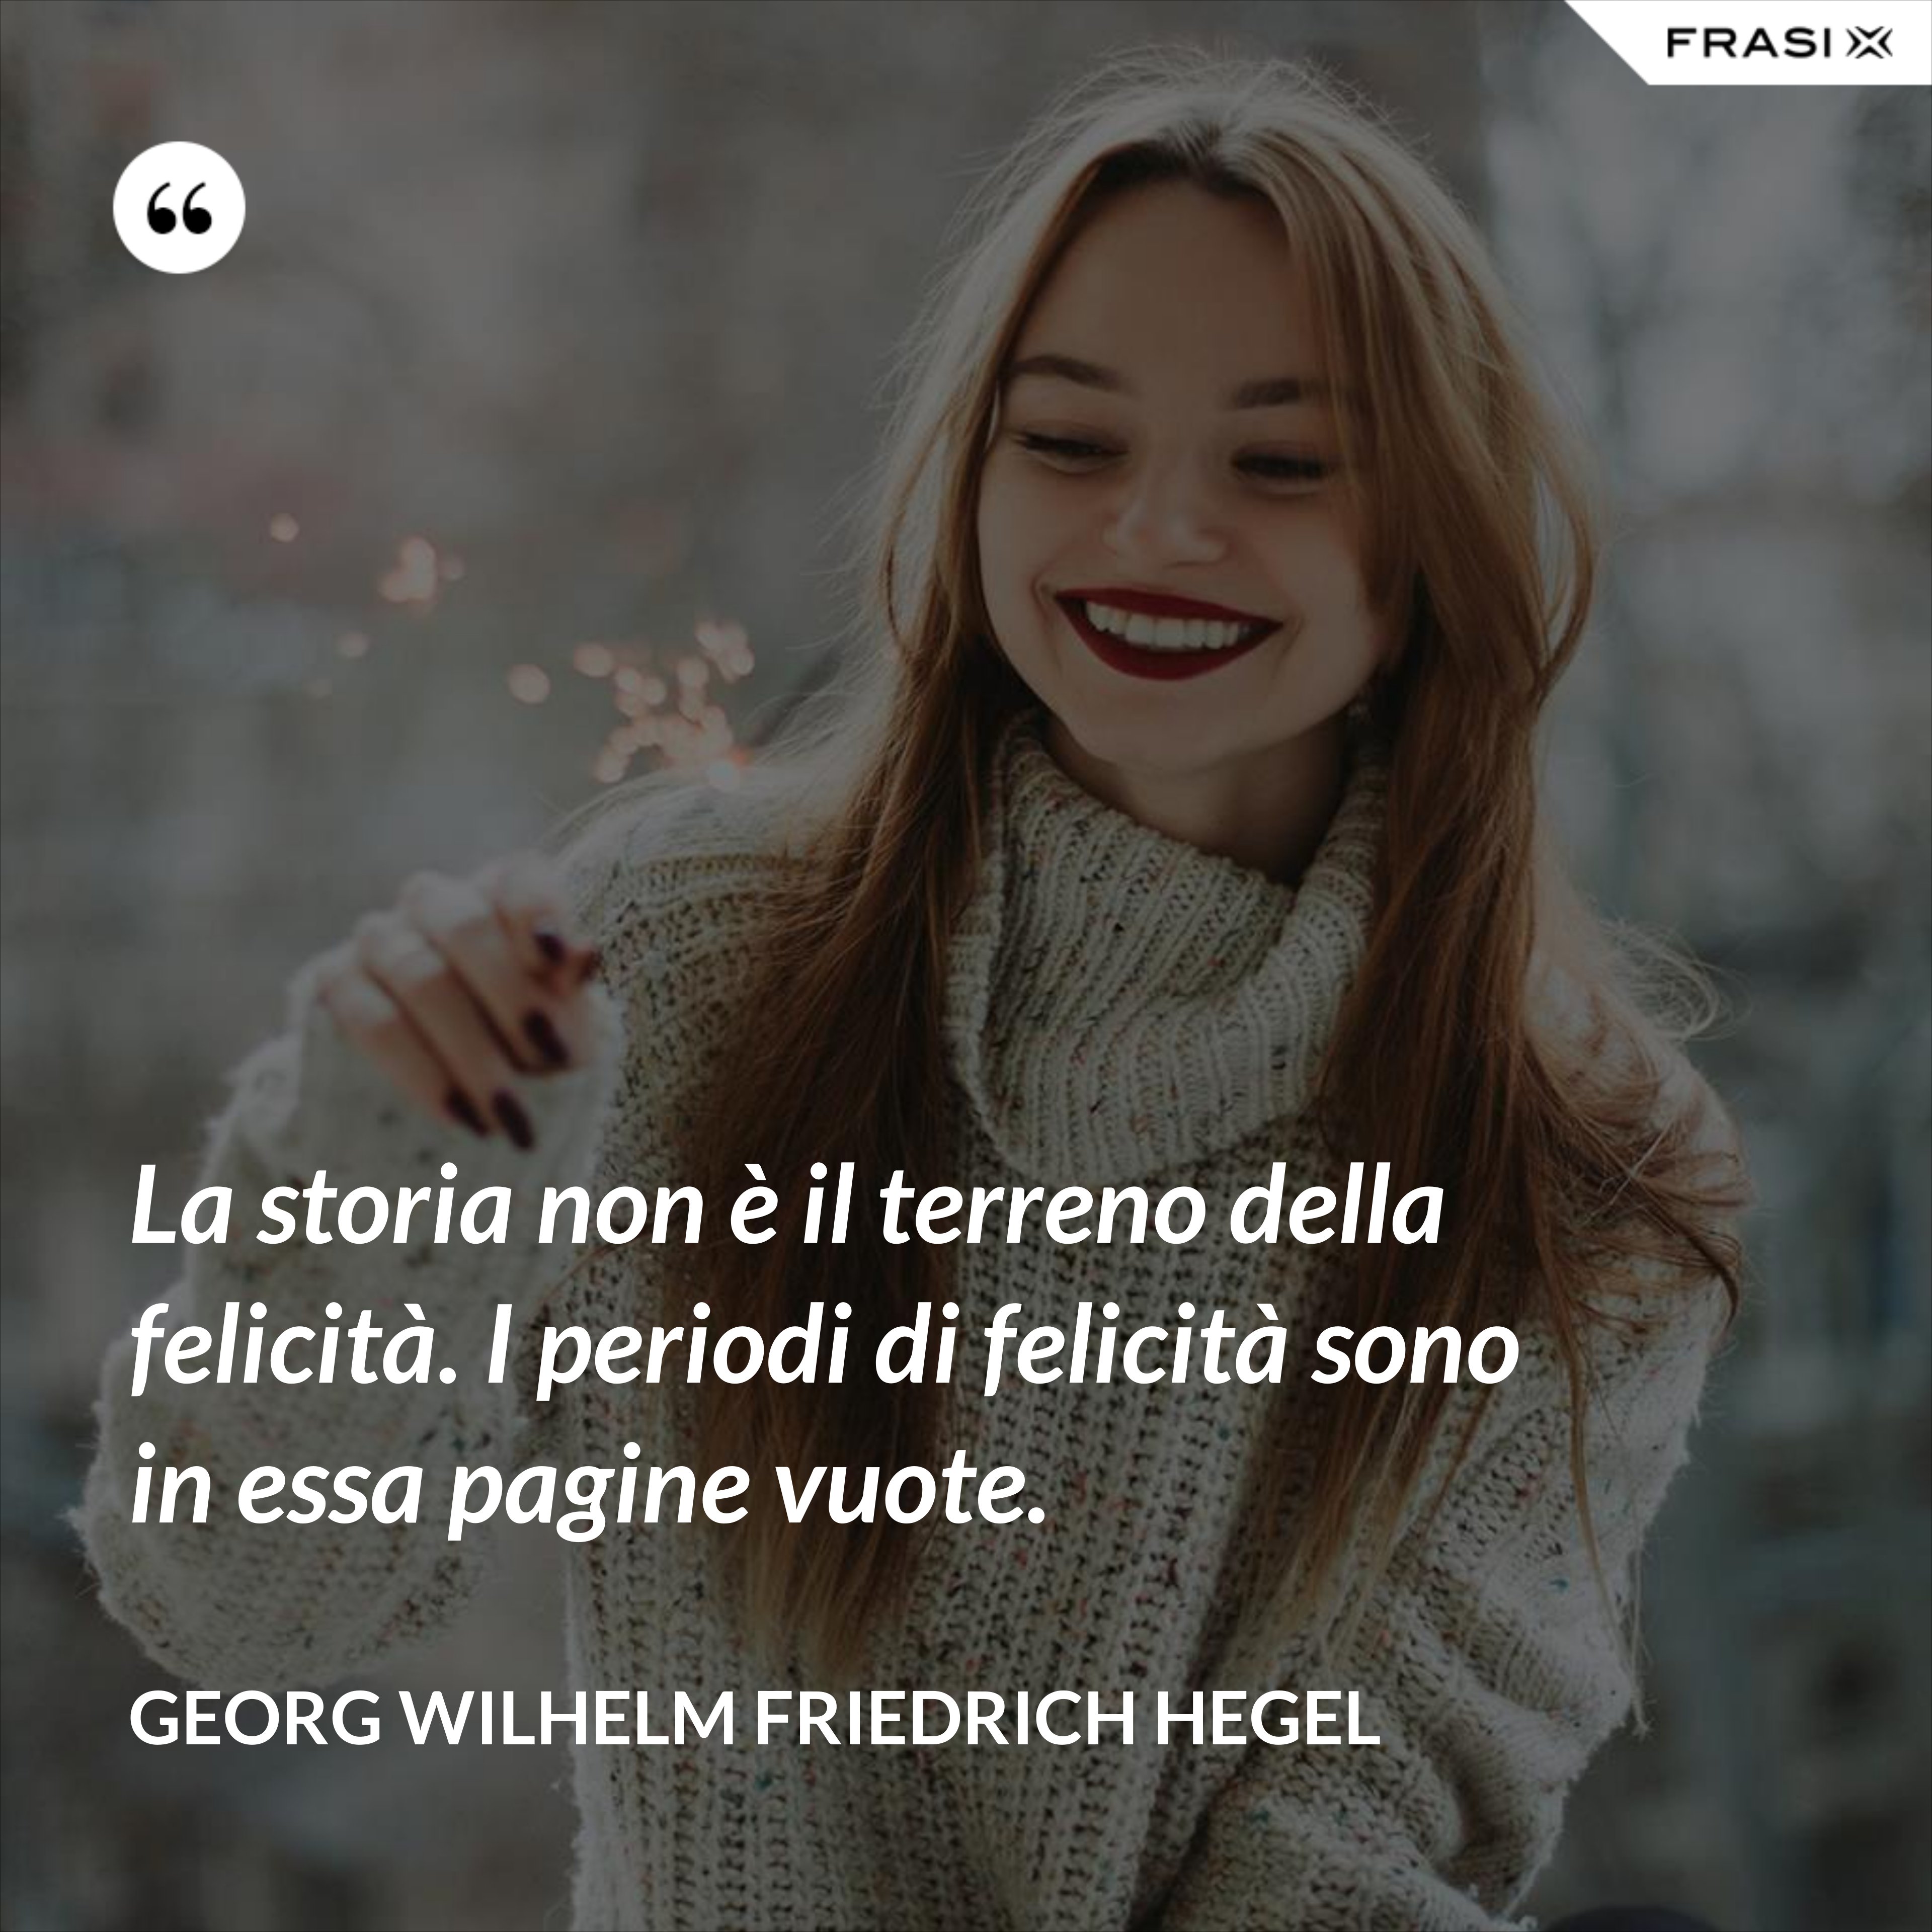 La storia non è il terreno della felicità. I periodi di felicità sono in essa pagine vuote. - Georg Wilhelm Friedrich Hegel